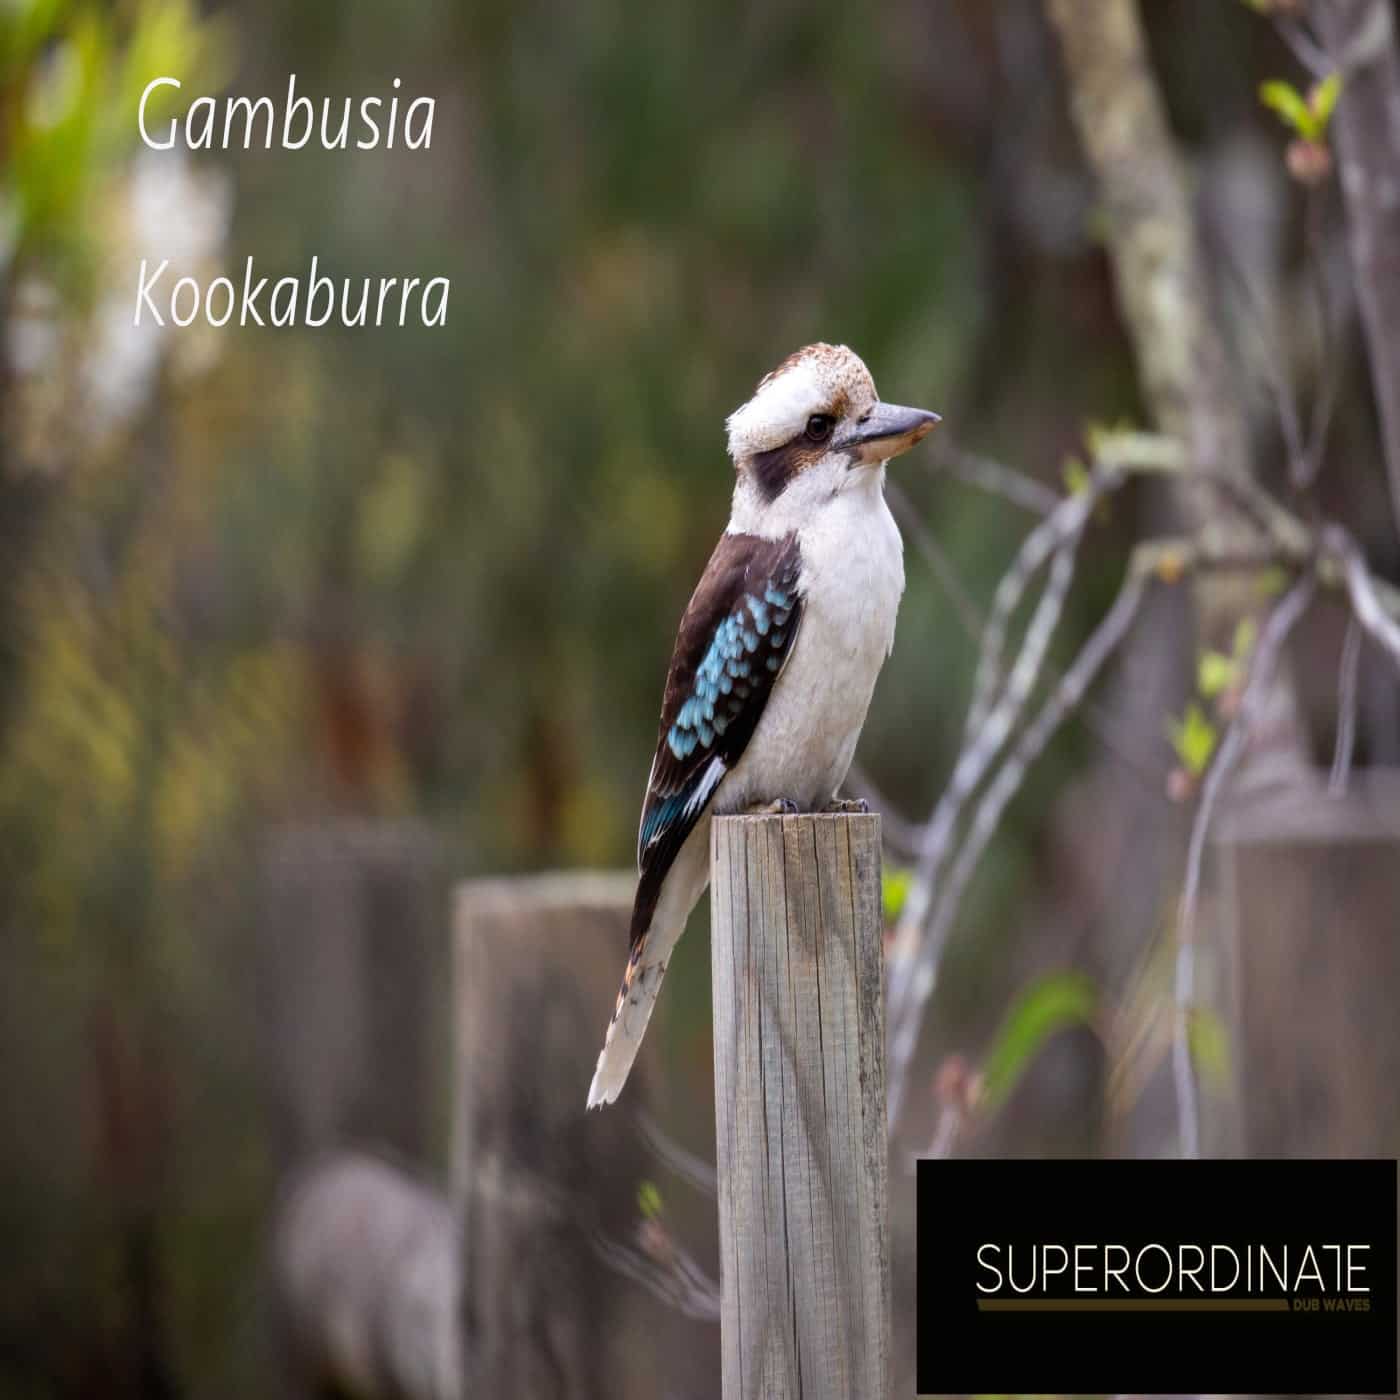 Download Gambusia - Kookaburra on Electrobuzz